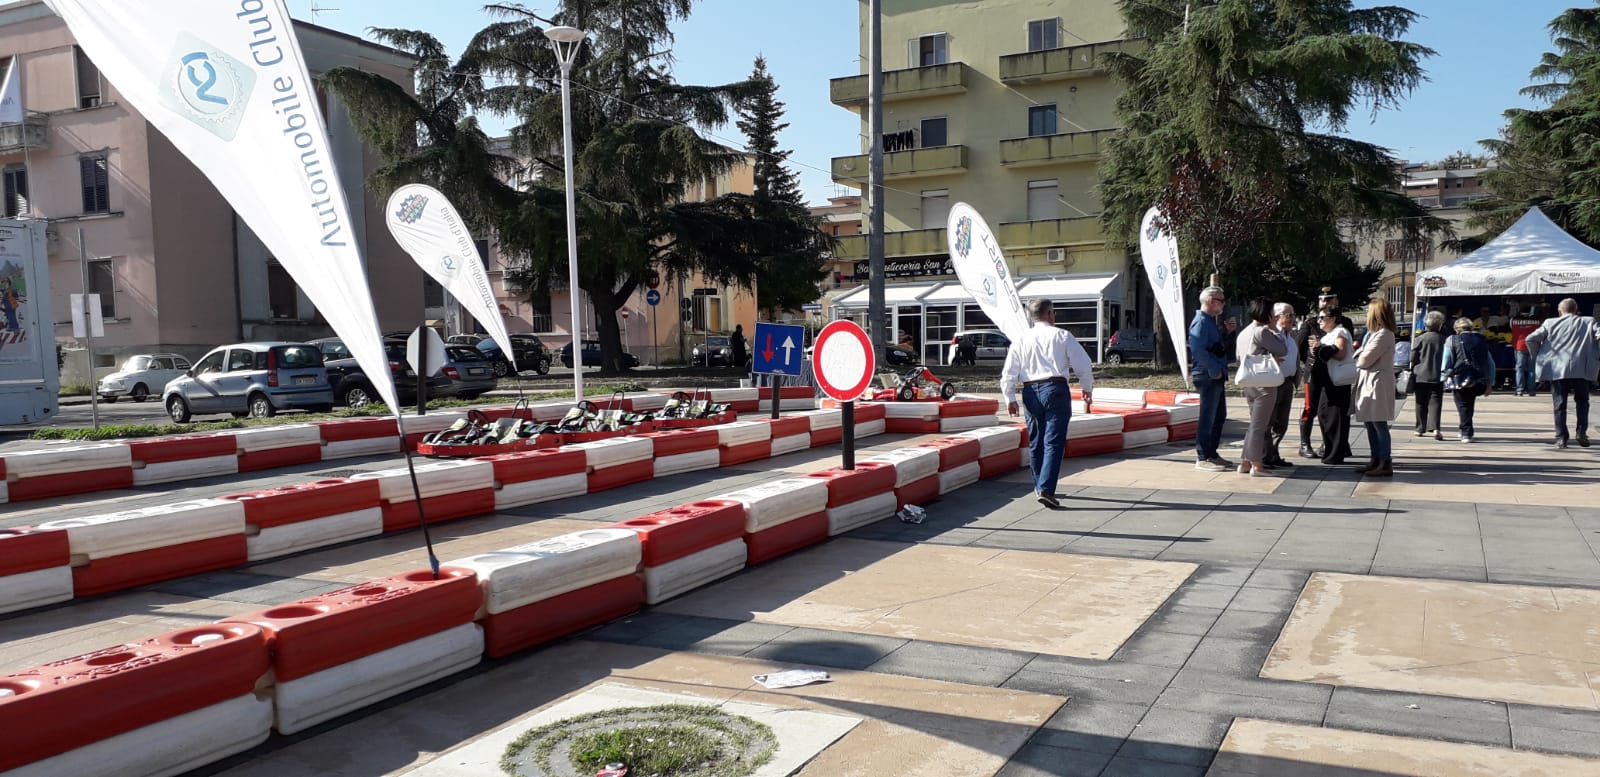 Benevento| Go-Kart e regole stradali, a San Modesto l’evento “Karting in piazza”